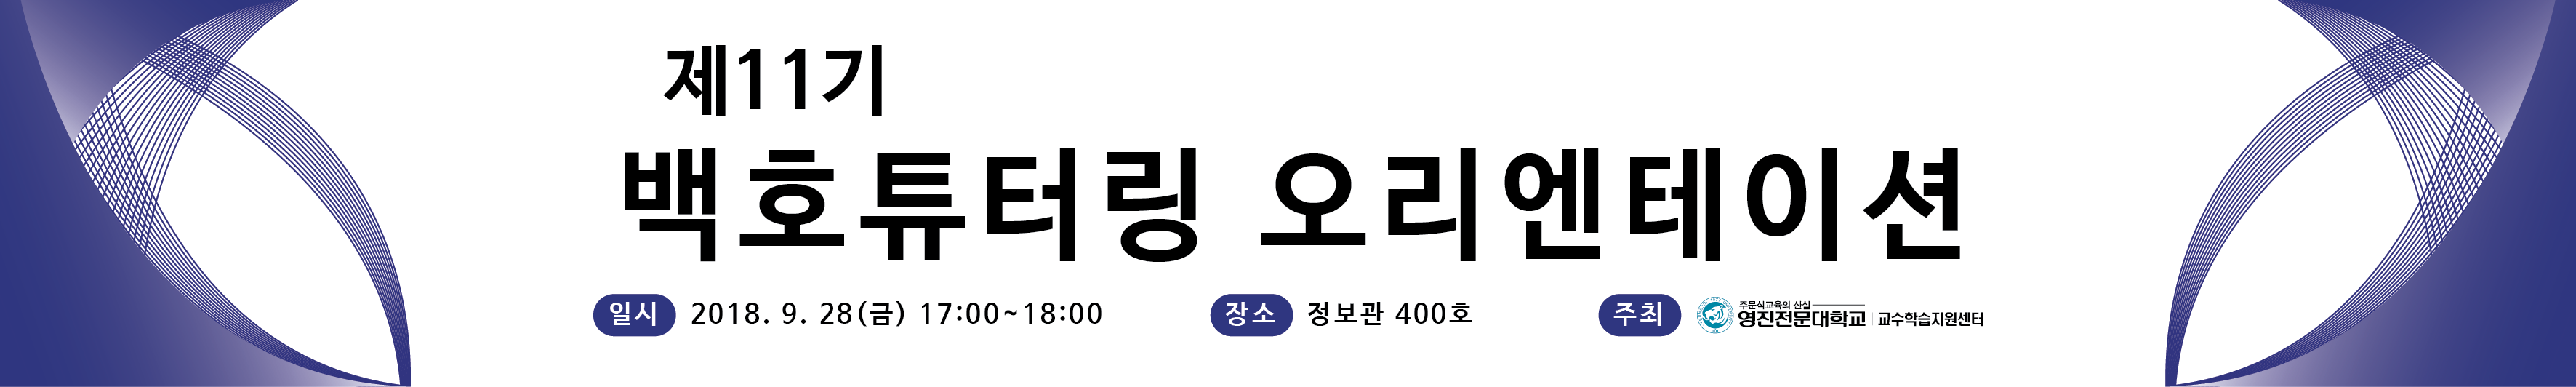 제11기 백호튜터링 현수막-01.png